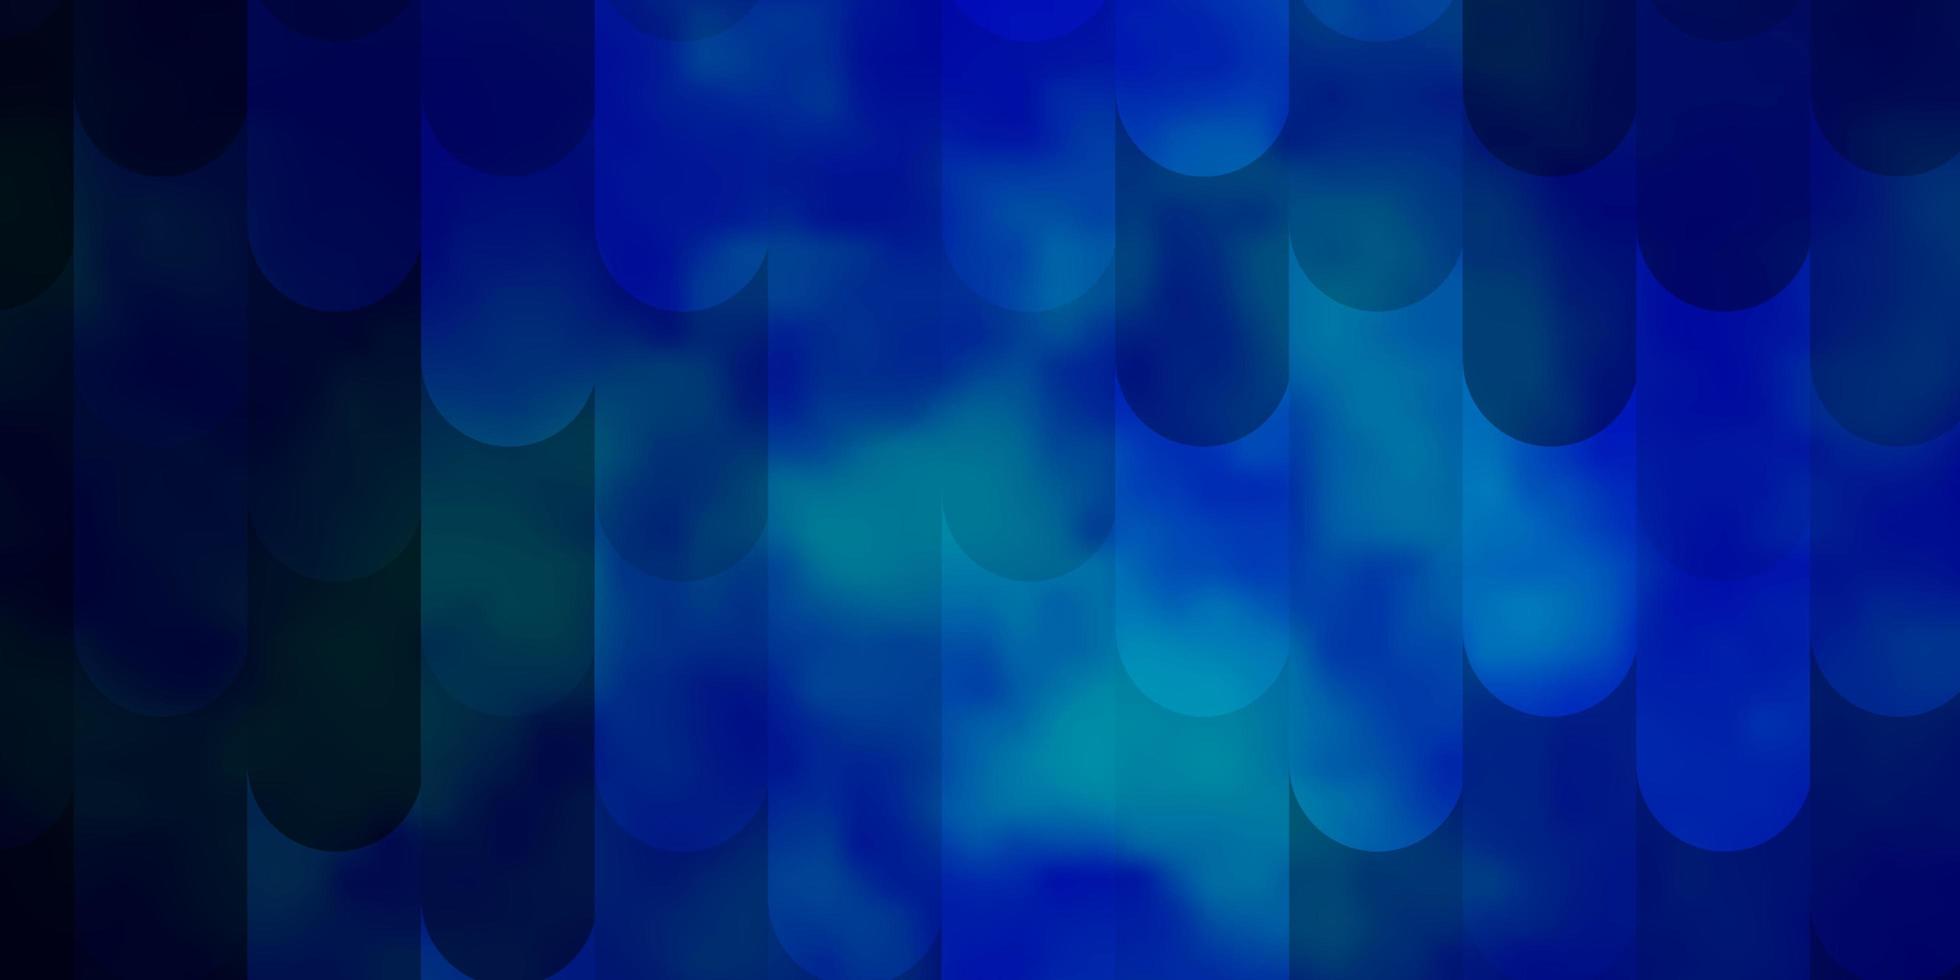 sfondo vettoriale azzurro con linee